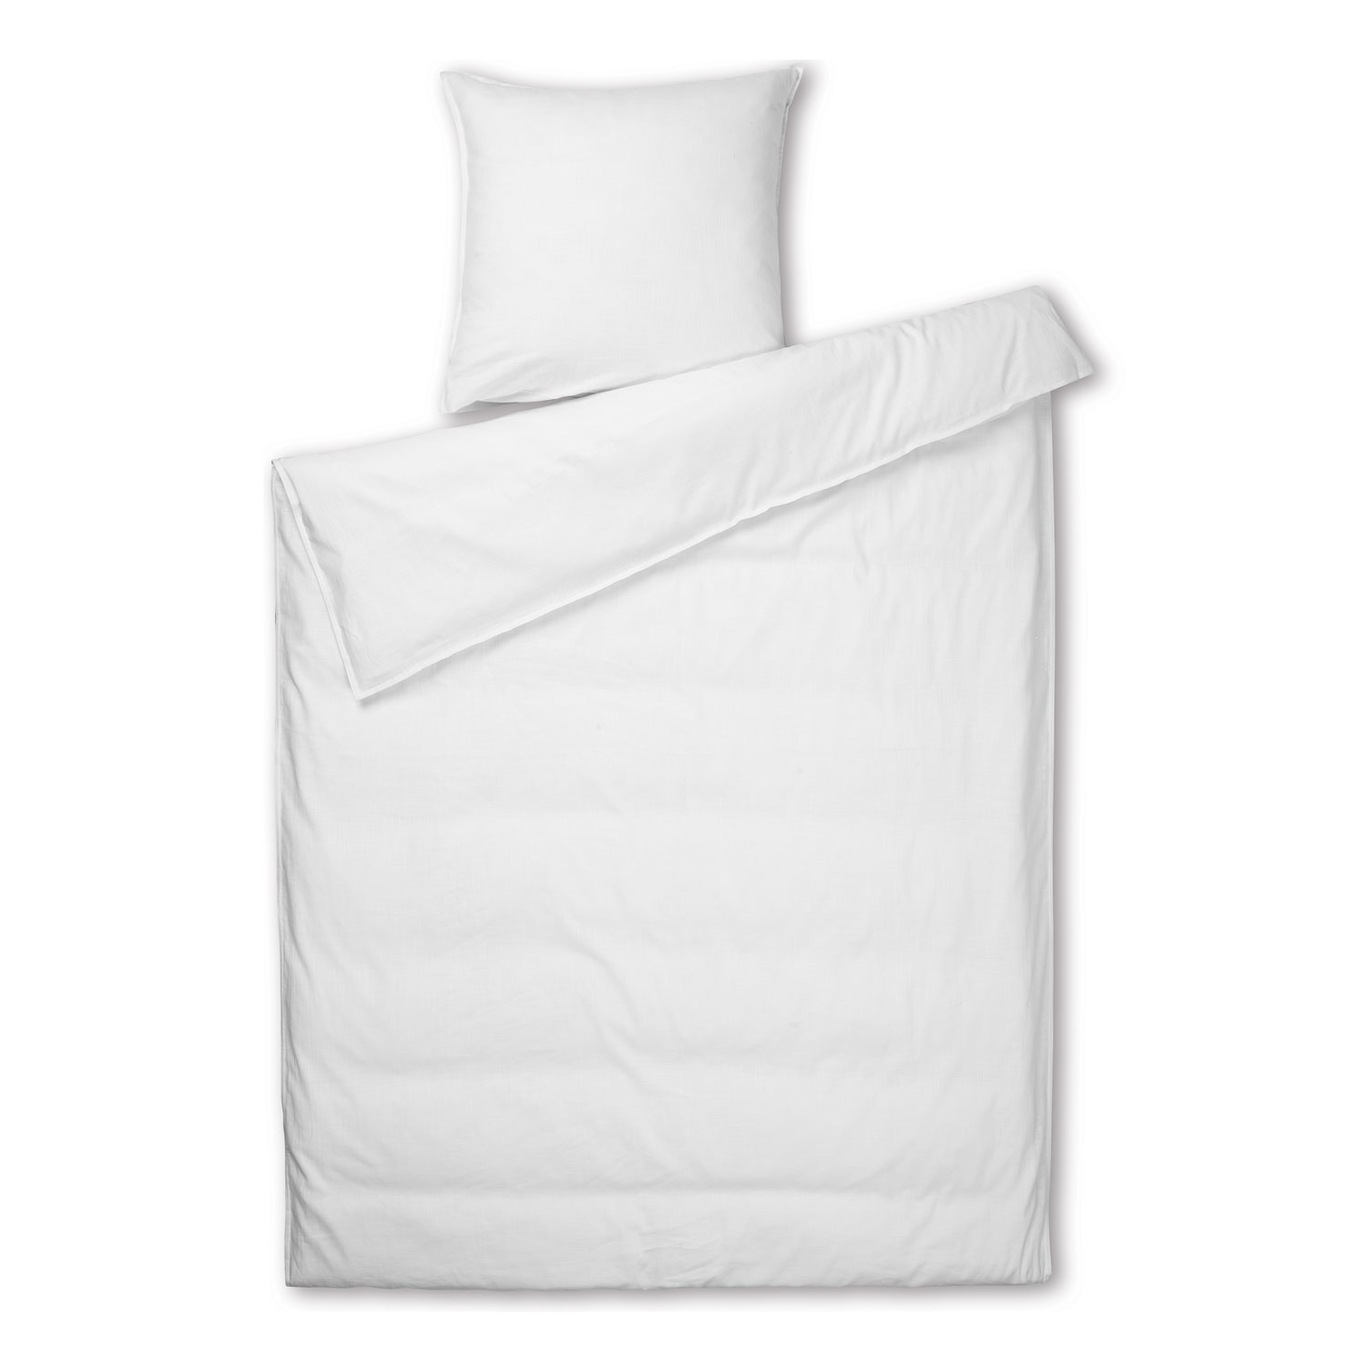 Monochrome Bettbezug Weiß, 220x220 + 50x60 cm